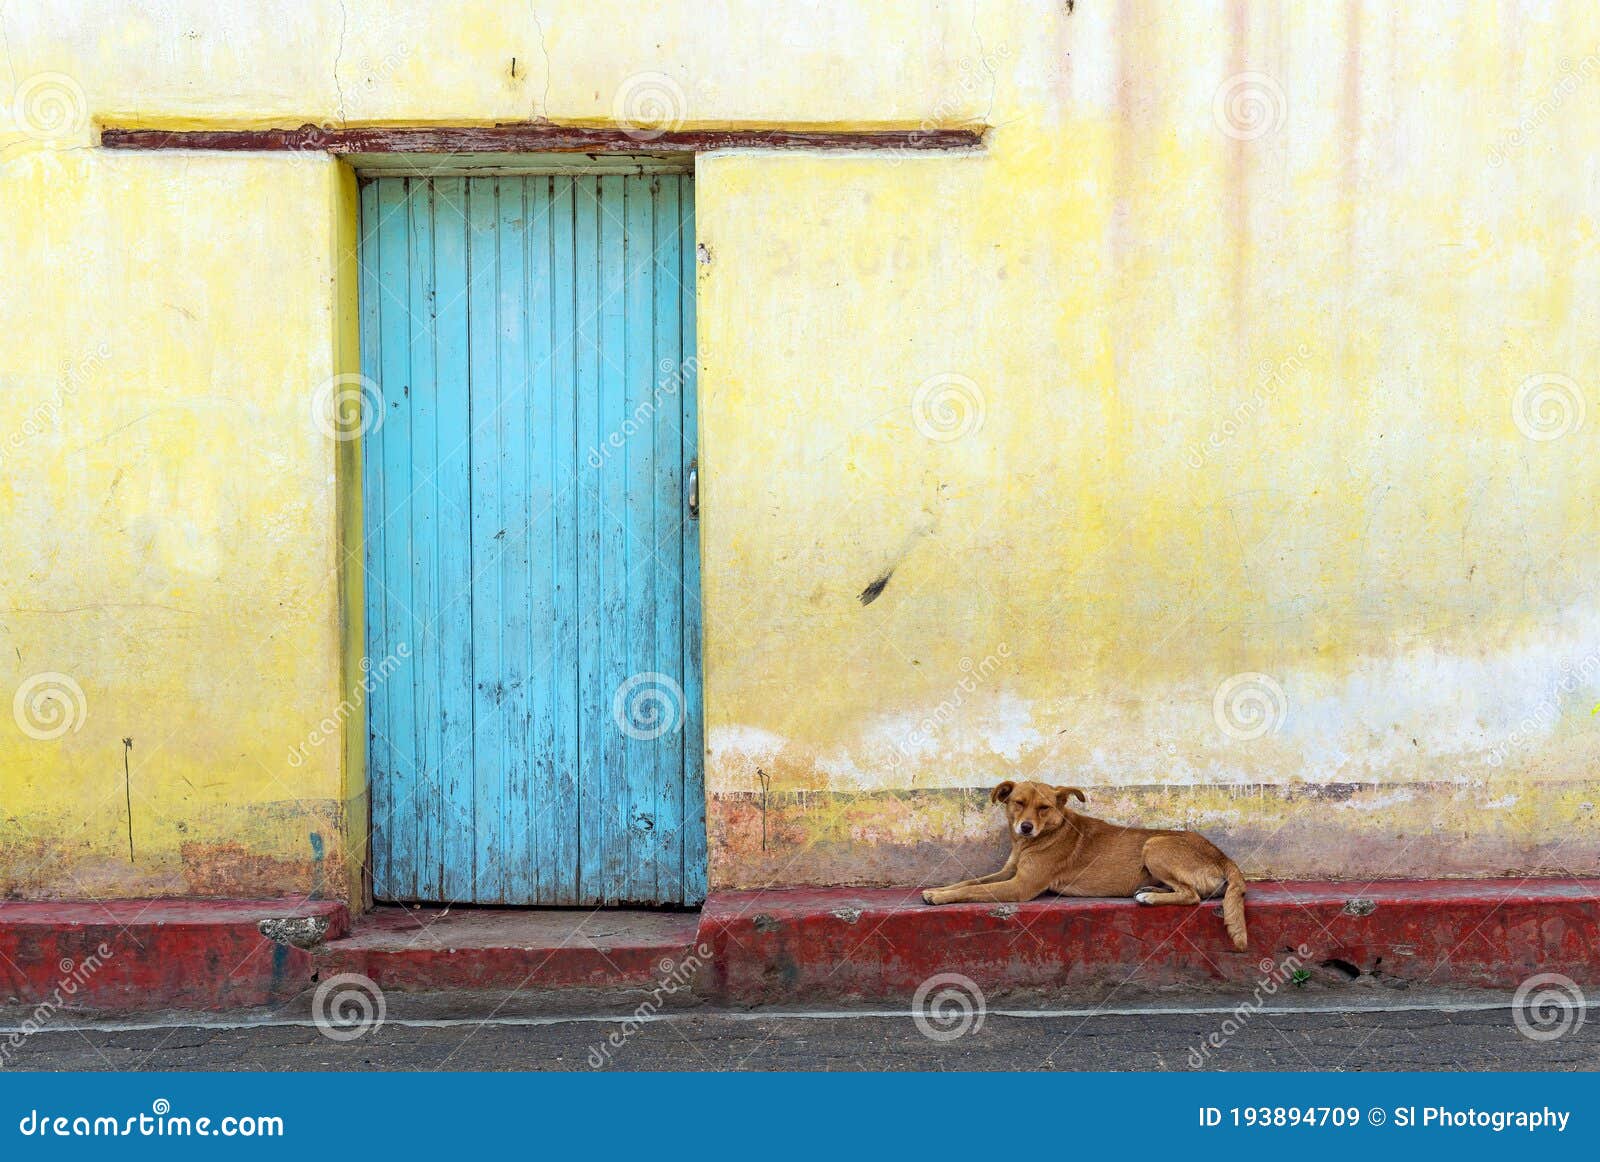 facade with turquoise door and dog, panajachel, guatemala